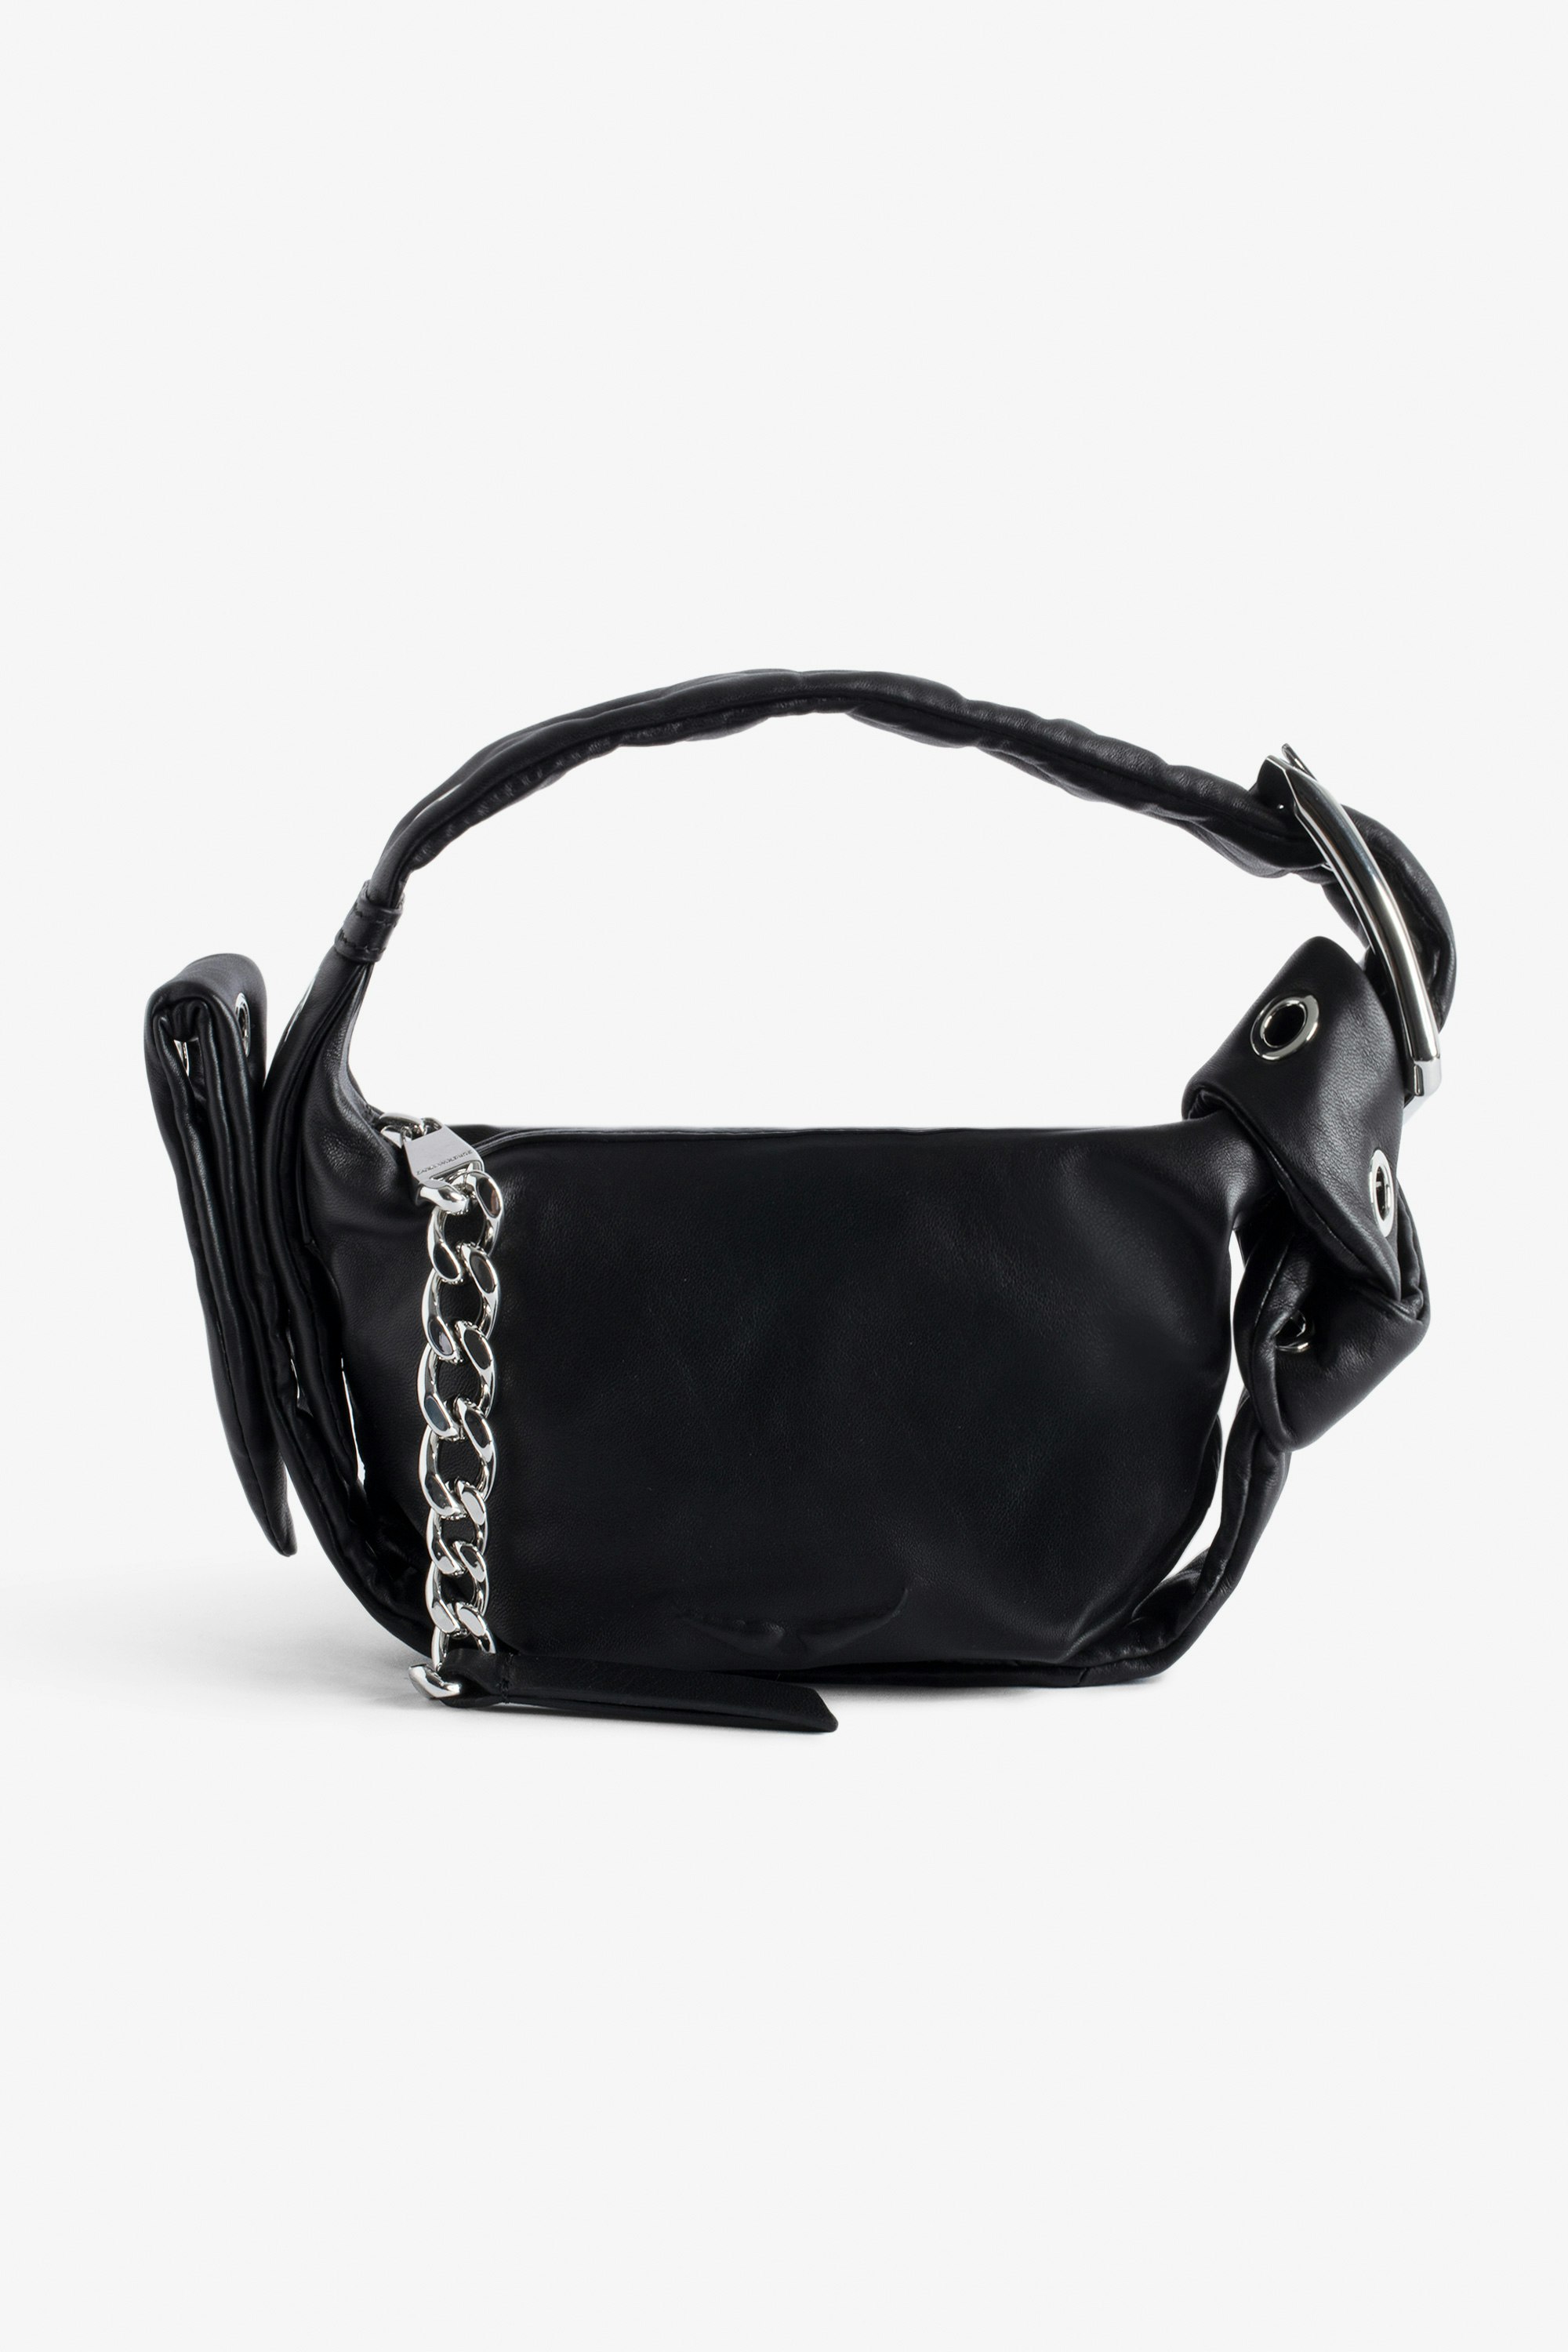 Handtasche Le Cecilia XS Obsession - Kleine Tasche aus schwarzem Glattleder mit Schulterriemen und C-förmiger Metallschnalle für Damen.